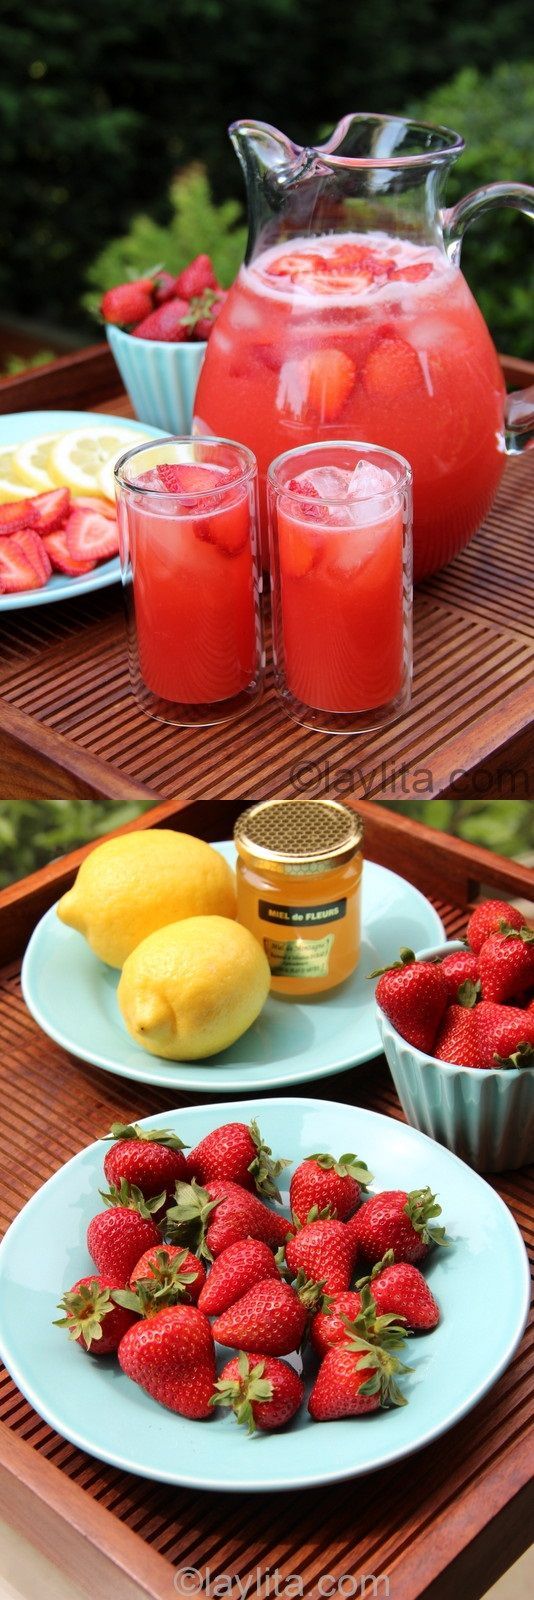 Homemade strawberry lemonade recipe, made in the blender using lemons, strawberries and